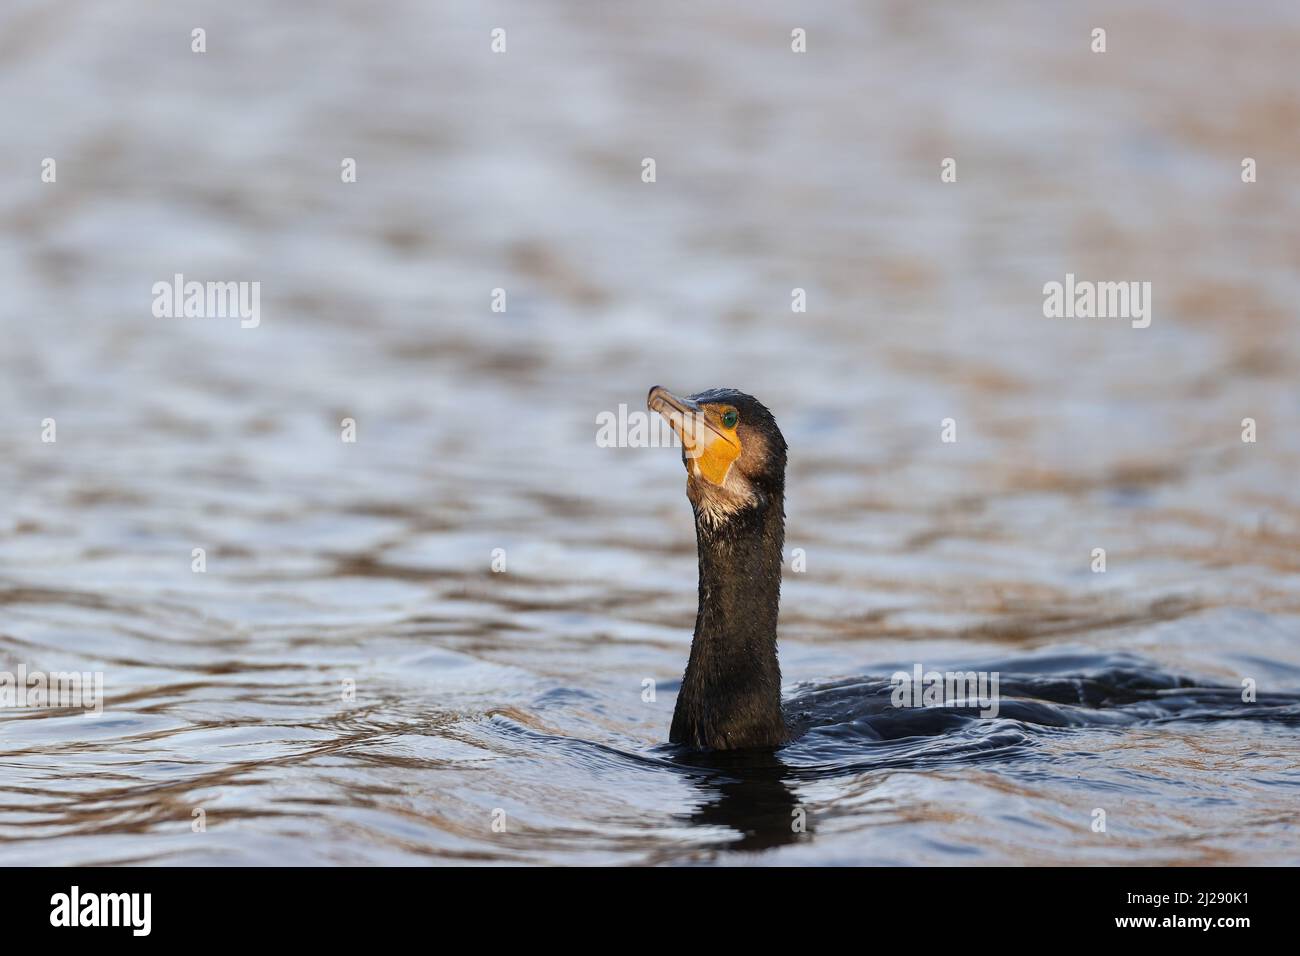 Great cormorant Stock Photo